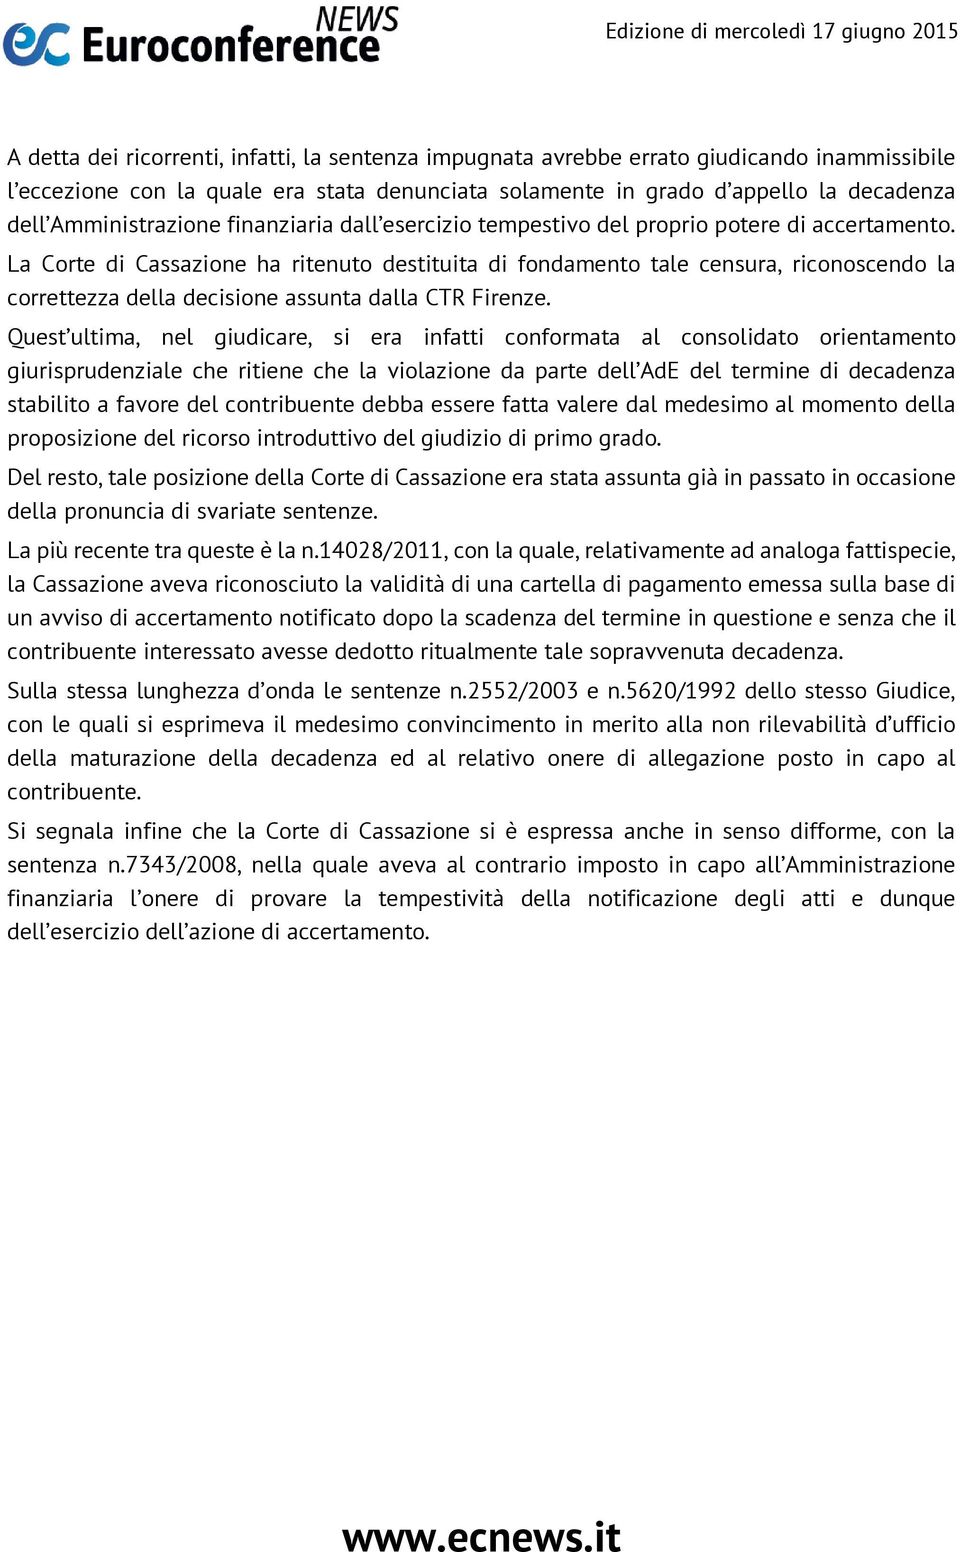 La Corte di Cassazione ha ritenuto destituita di fondamento tale censura, riconoscendo la correttezza della decisione assunta dalla CTR Firenze.